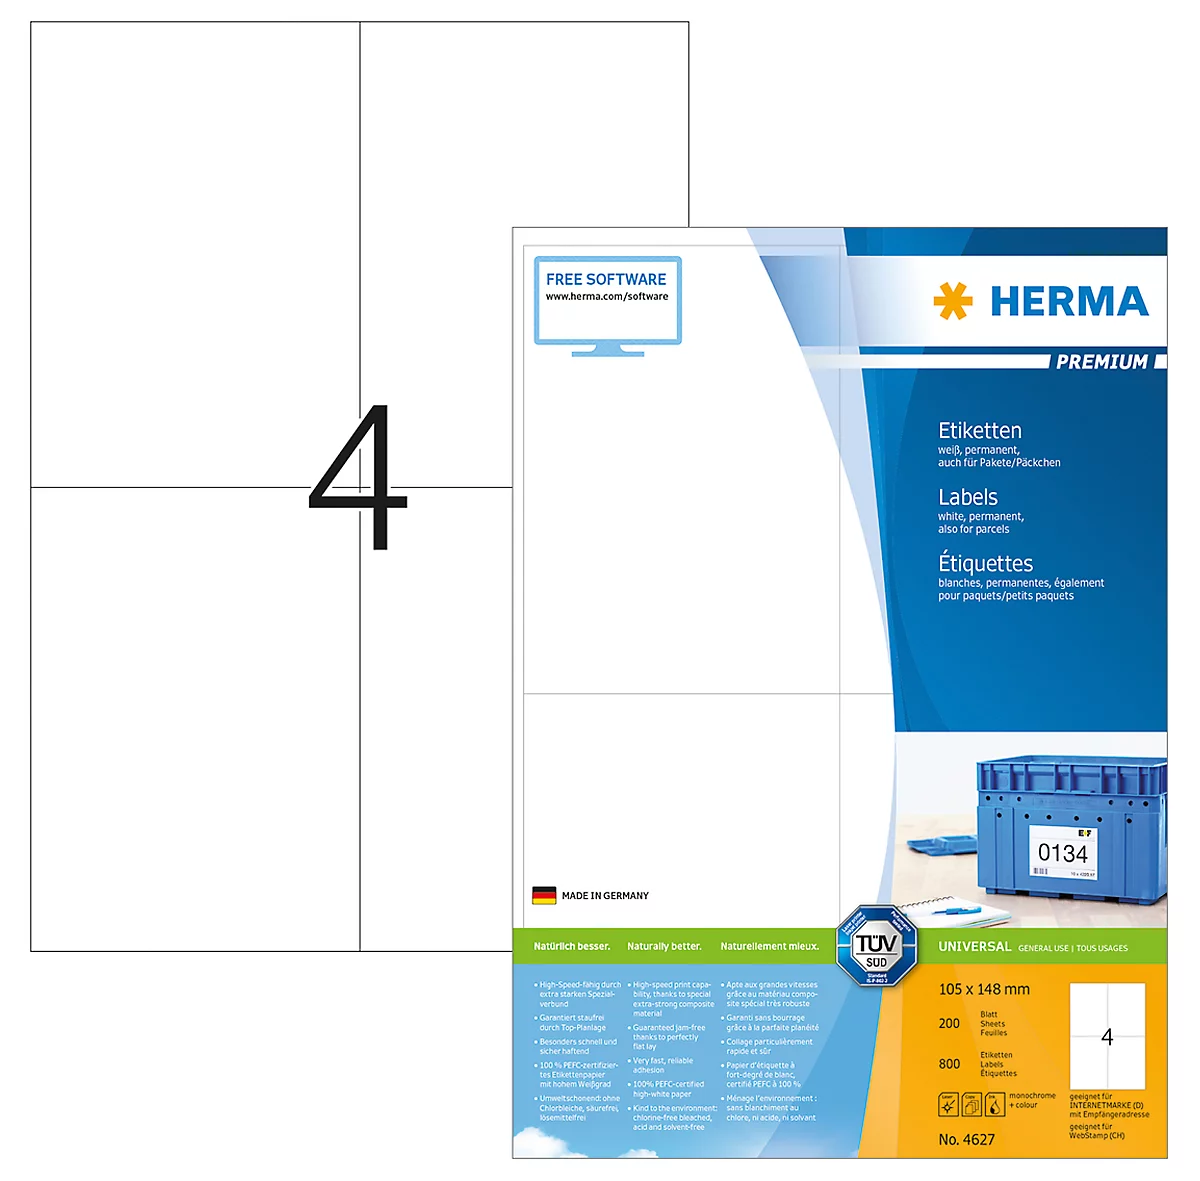 Herma Premium-Etiketten auf DIN A4-Blättern, 800 Etiketten, 200 Bogen